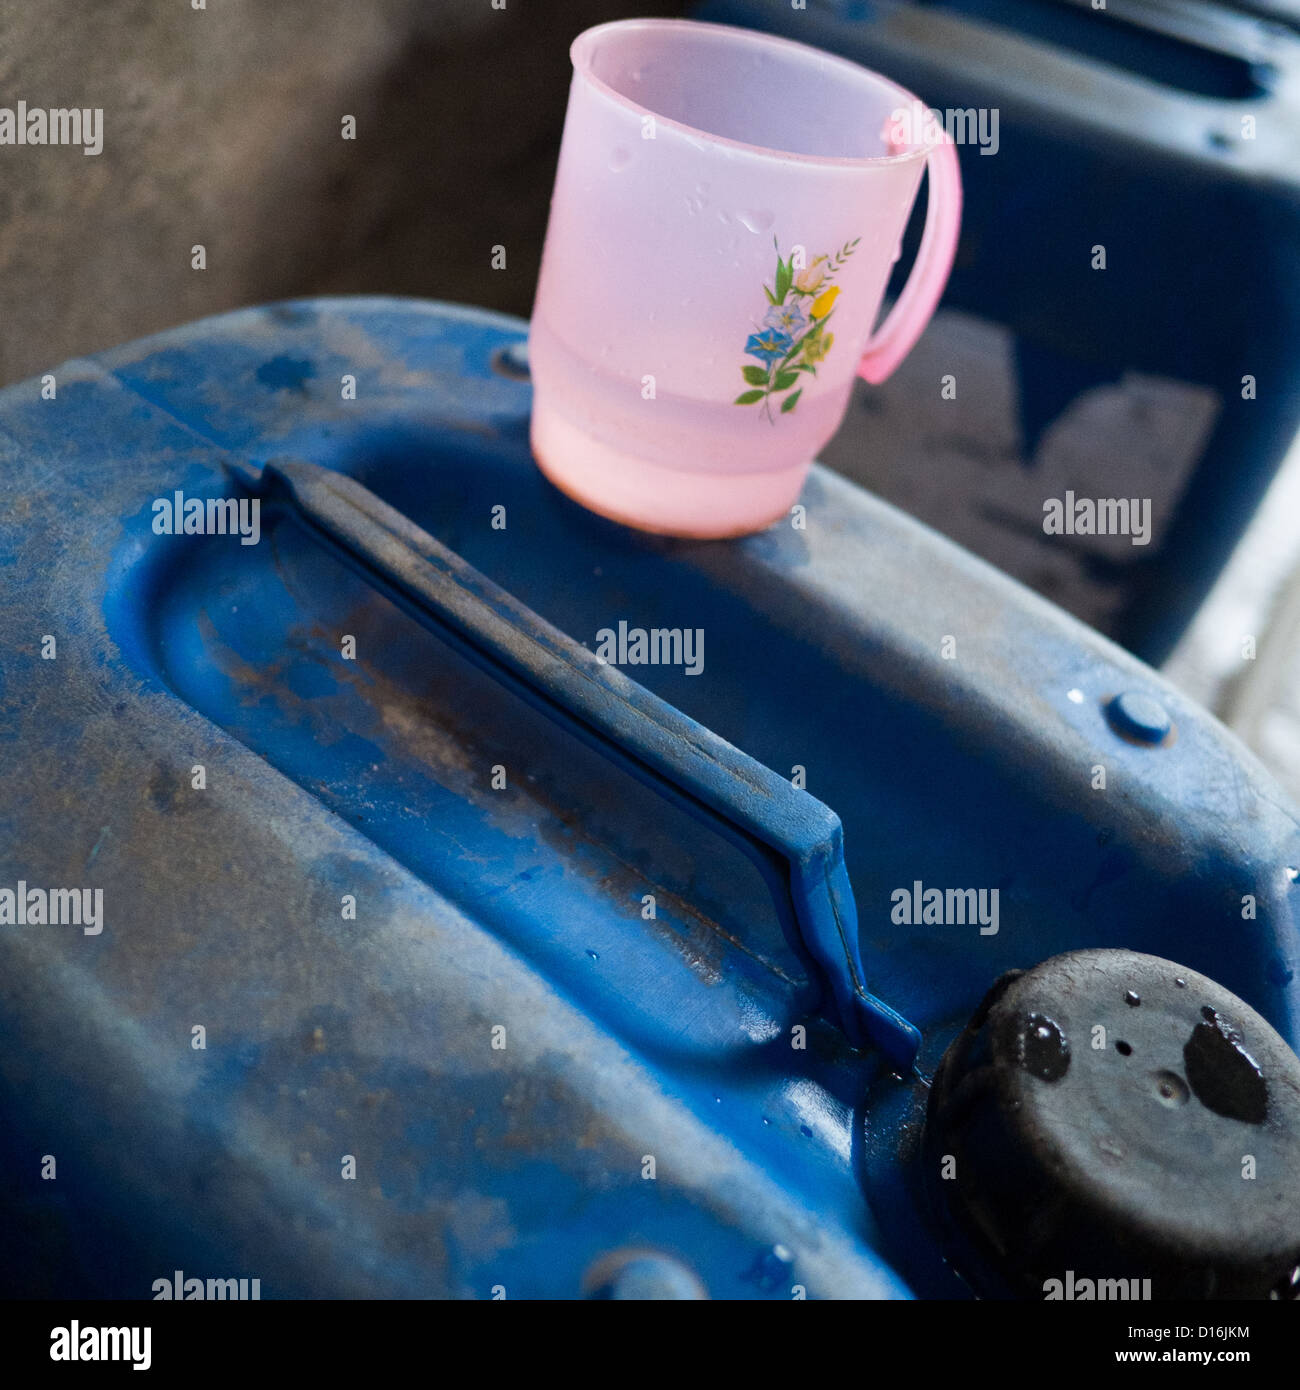 Rosa Plastik Krug auf einem großen blauen Kunststoff Flüssigkeitsbehälter zu messen Stockfoto